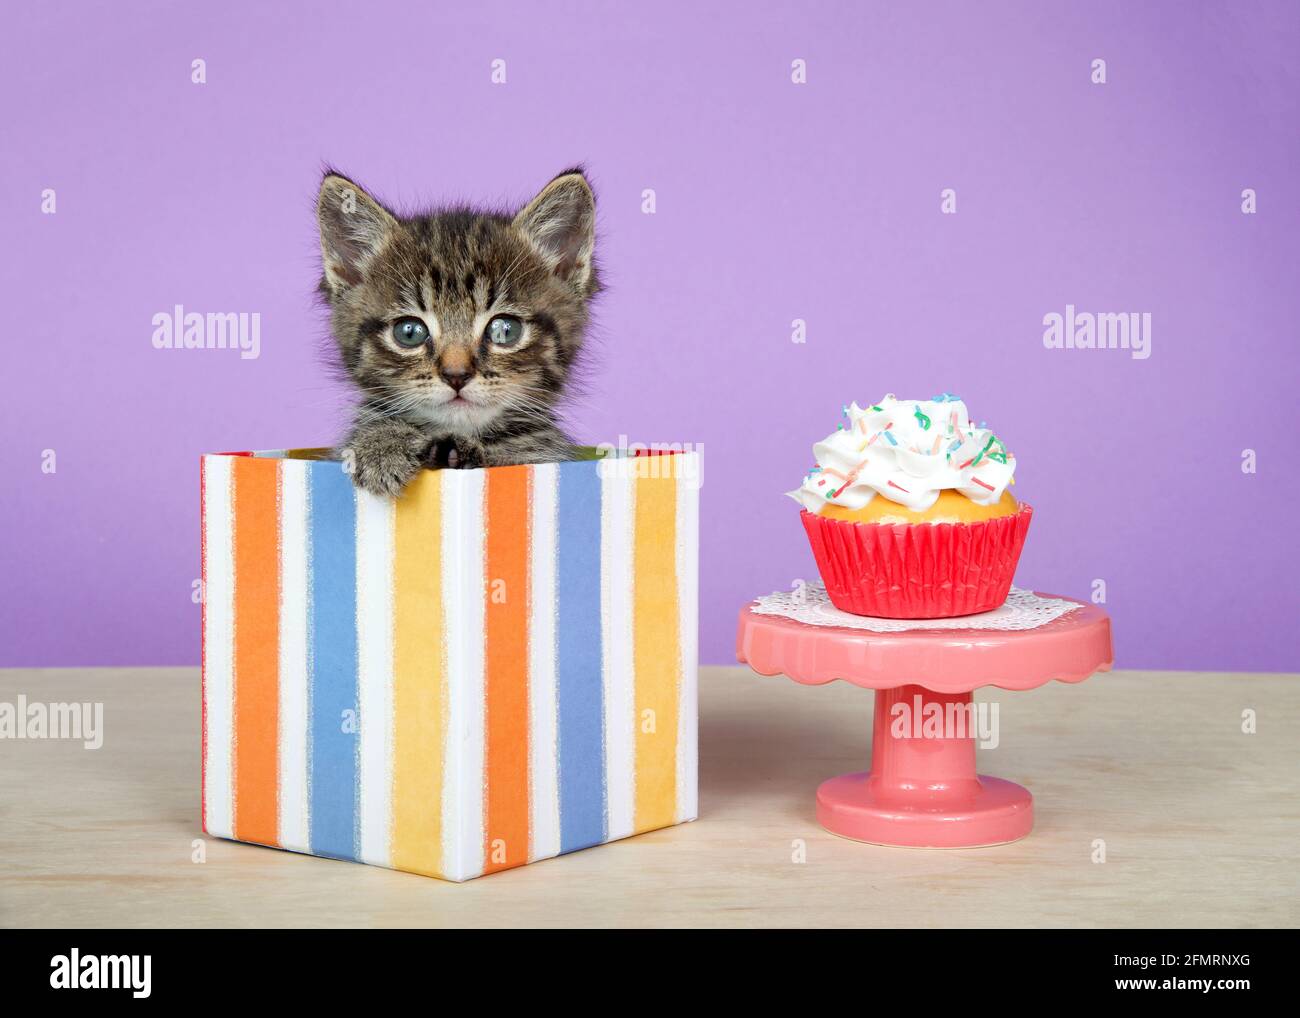 Gros plan d'un adorable chaton en tabby dans une boîte cadeau à rayures colorées à côté d'un piédestal rose avec un cupcake givré à la vanille. Léger Banque D'Images